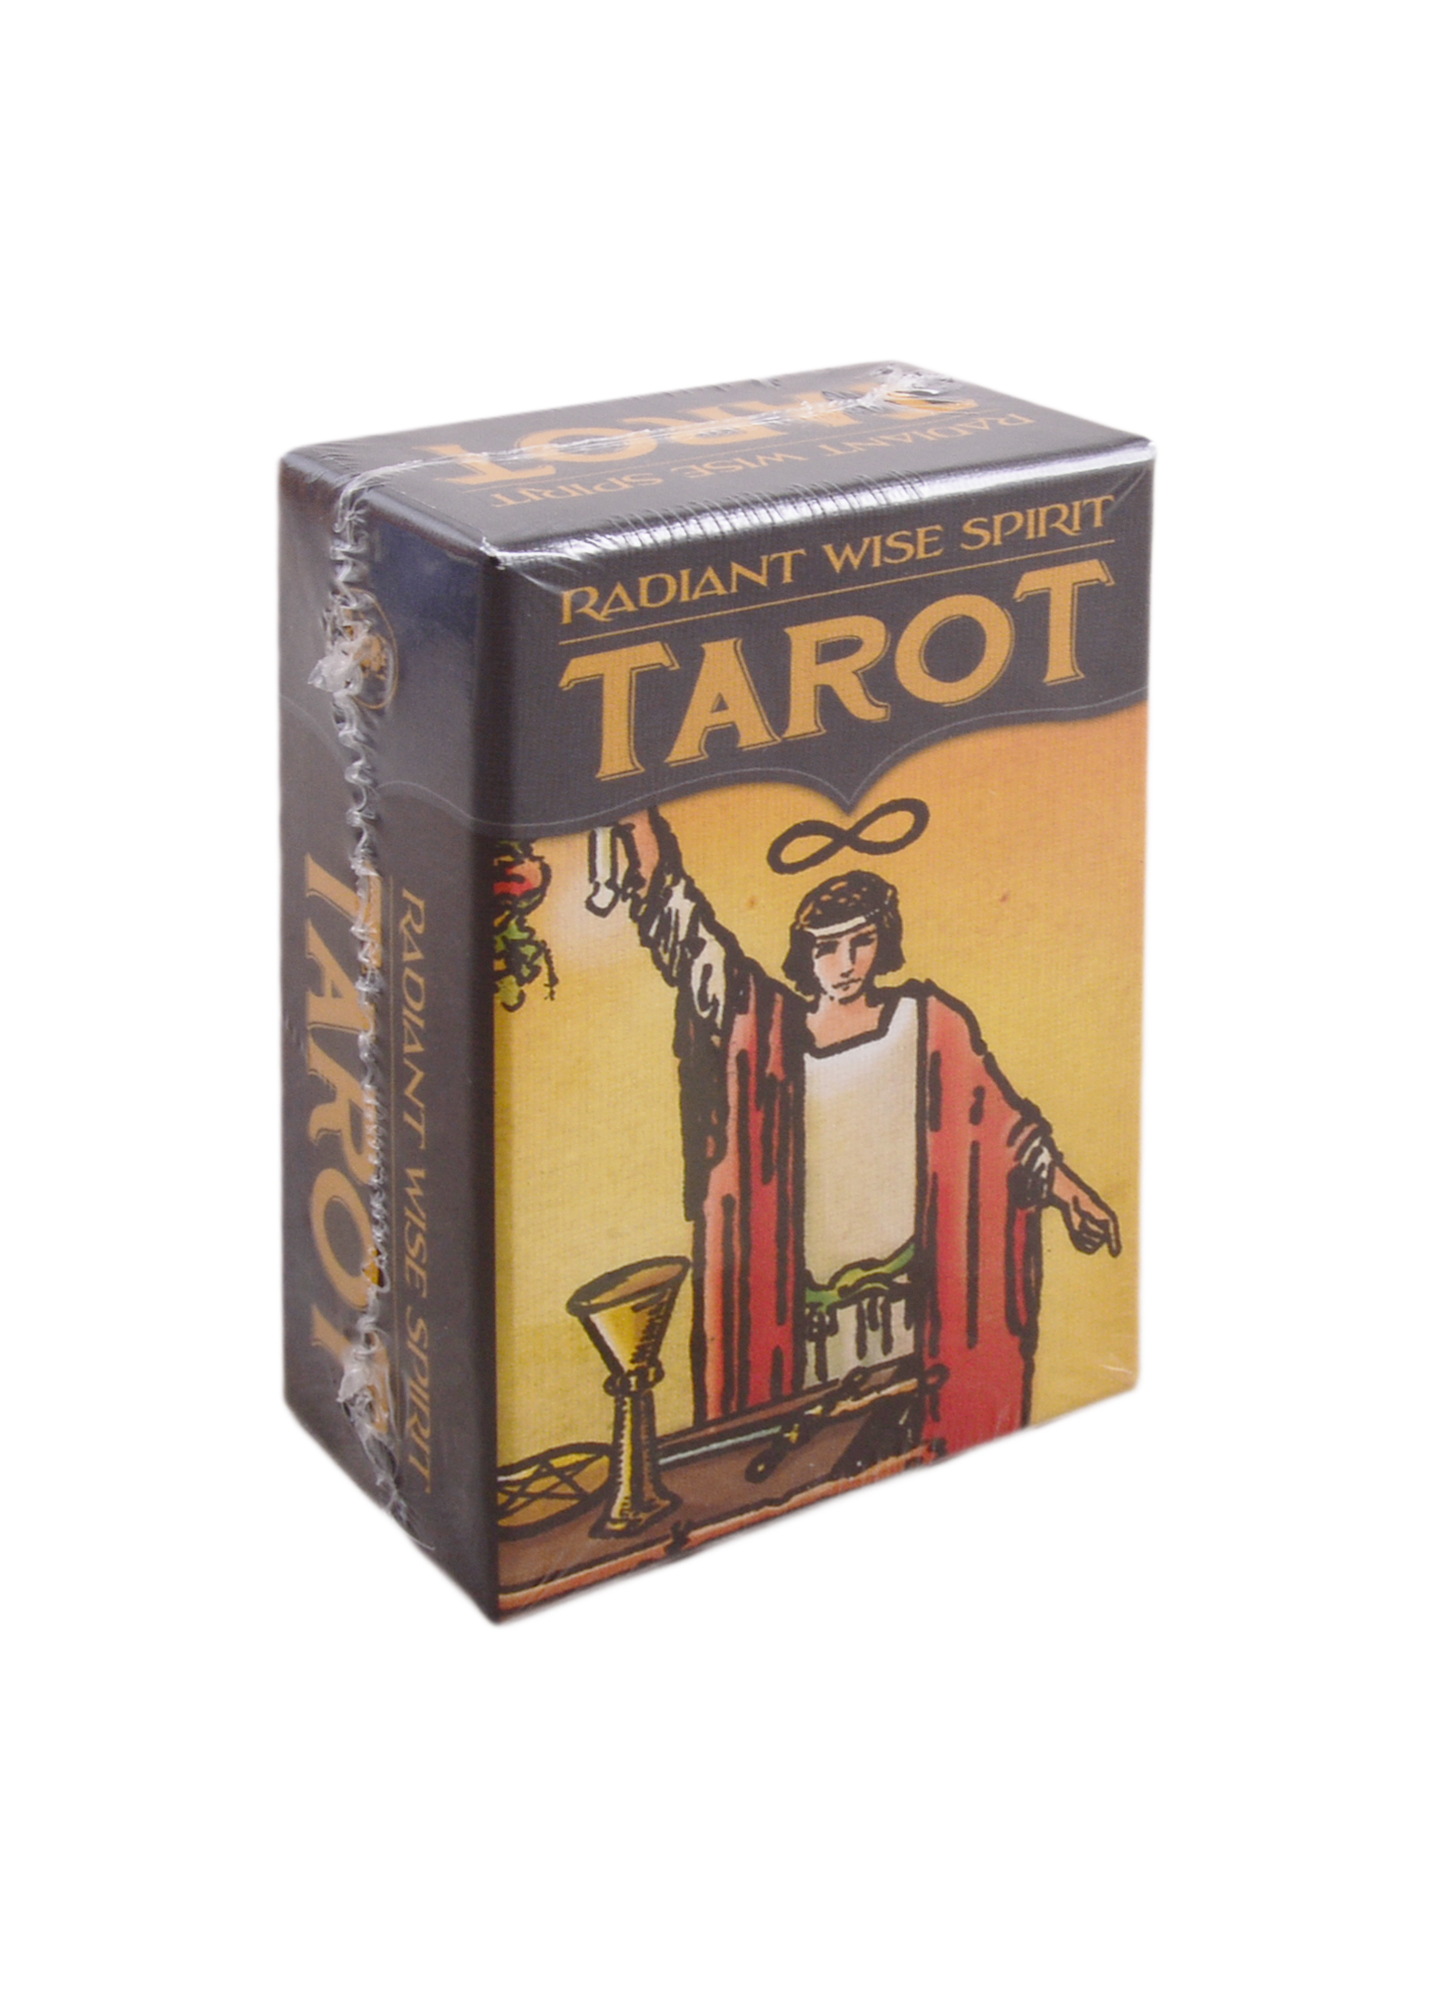 Radiant Wise Spirit Tarot radiant wise spirit tarot